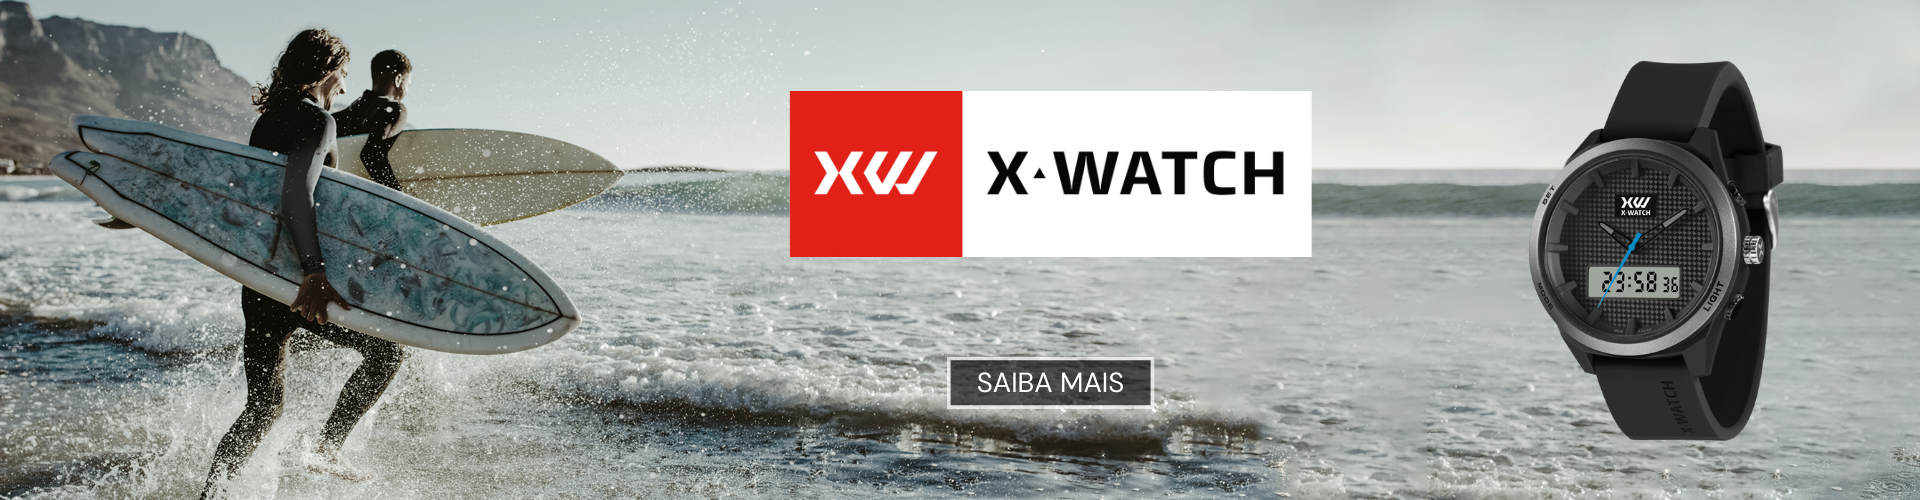 Relógios X-Watch